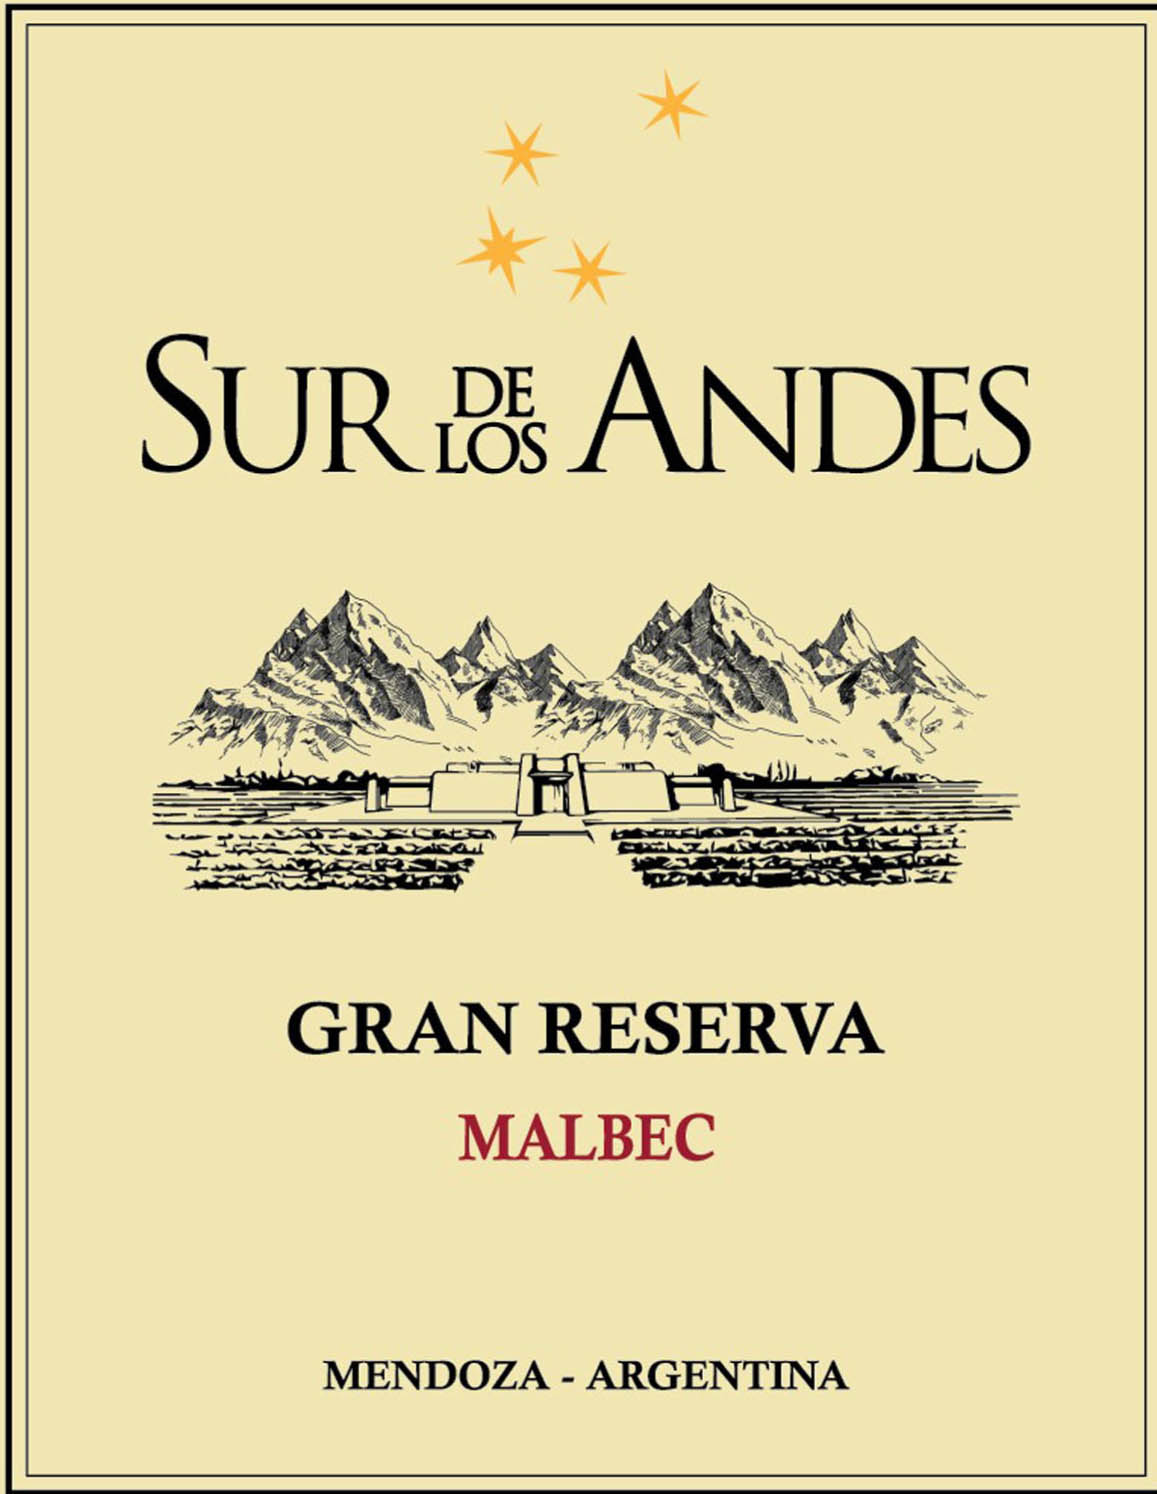 Sur de Los Andes - Malbec Gran Reserva label